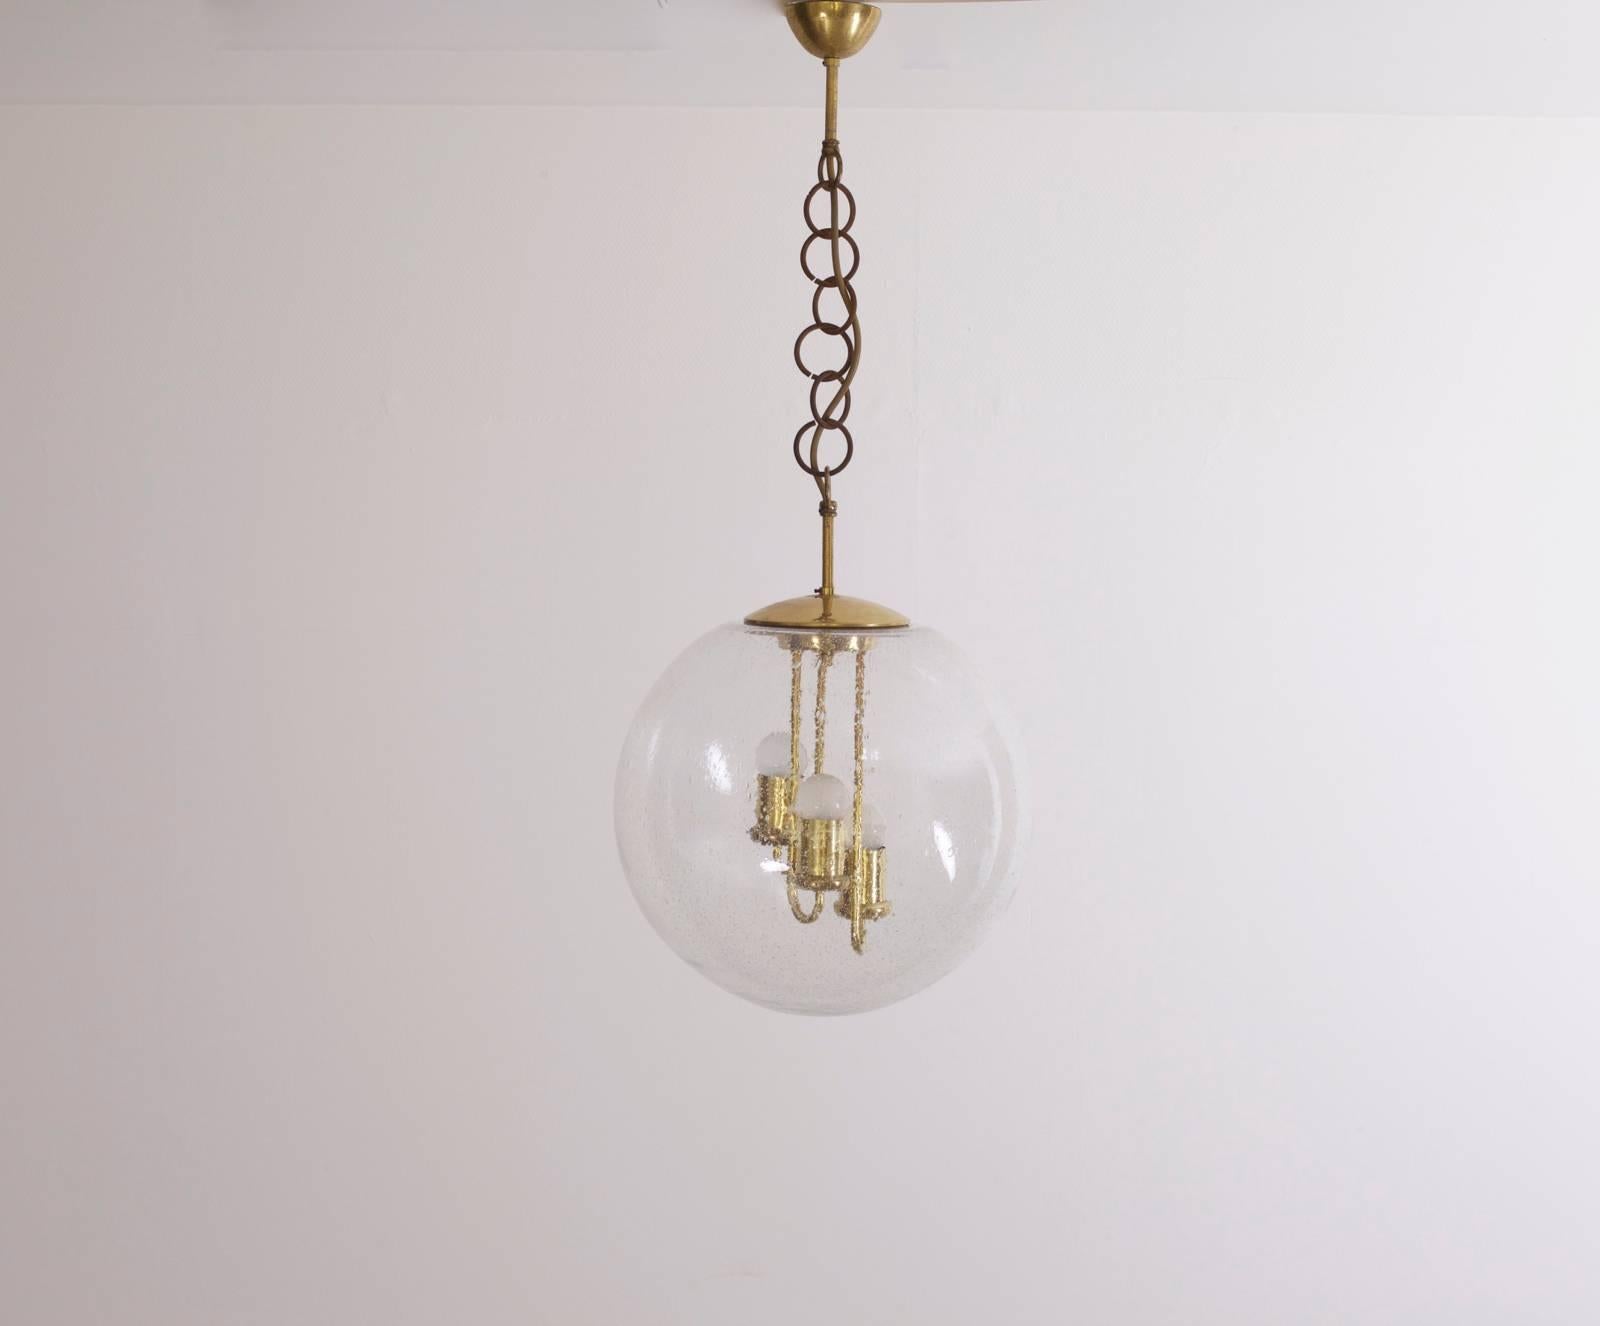 Rare énorme lampe suspendue Doria avec de beaux détails en laiton à l'intérieur du verre bulle.
Pour plus de sécurité, la lampe doit être vérifiée localement par un spécialiste en fonction des exigences locales.